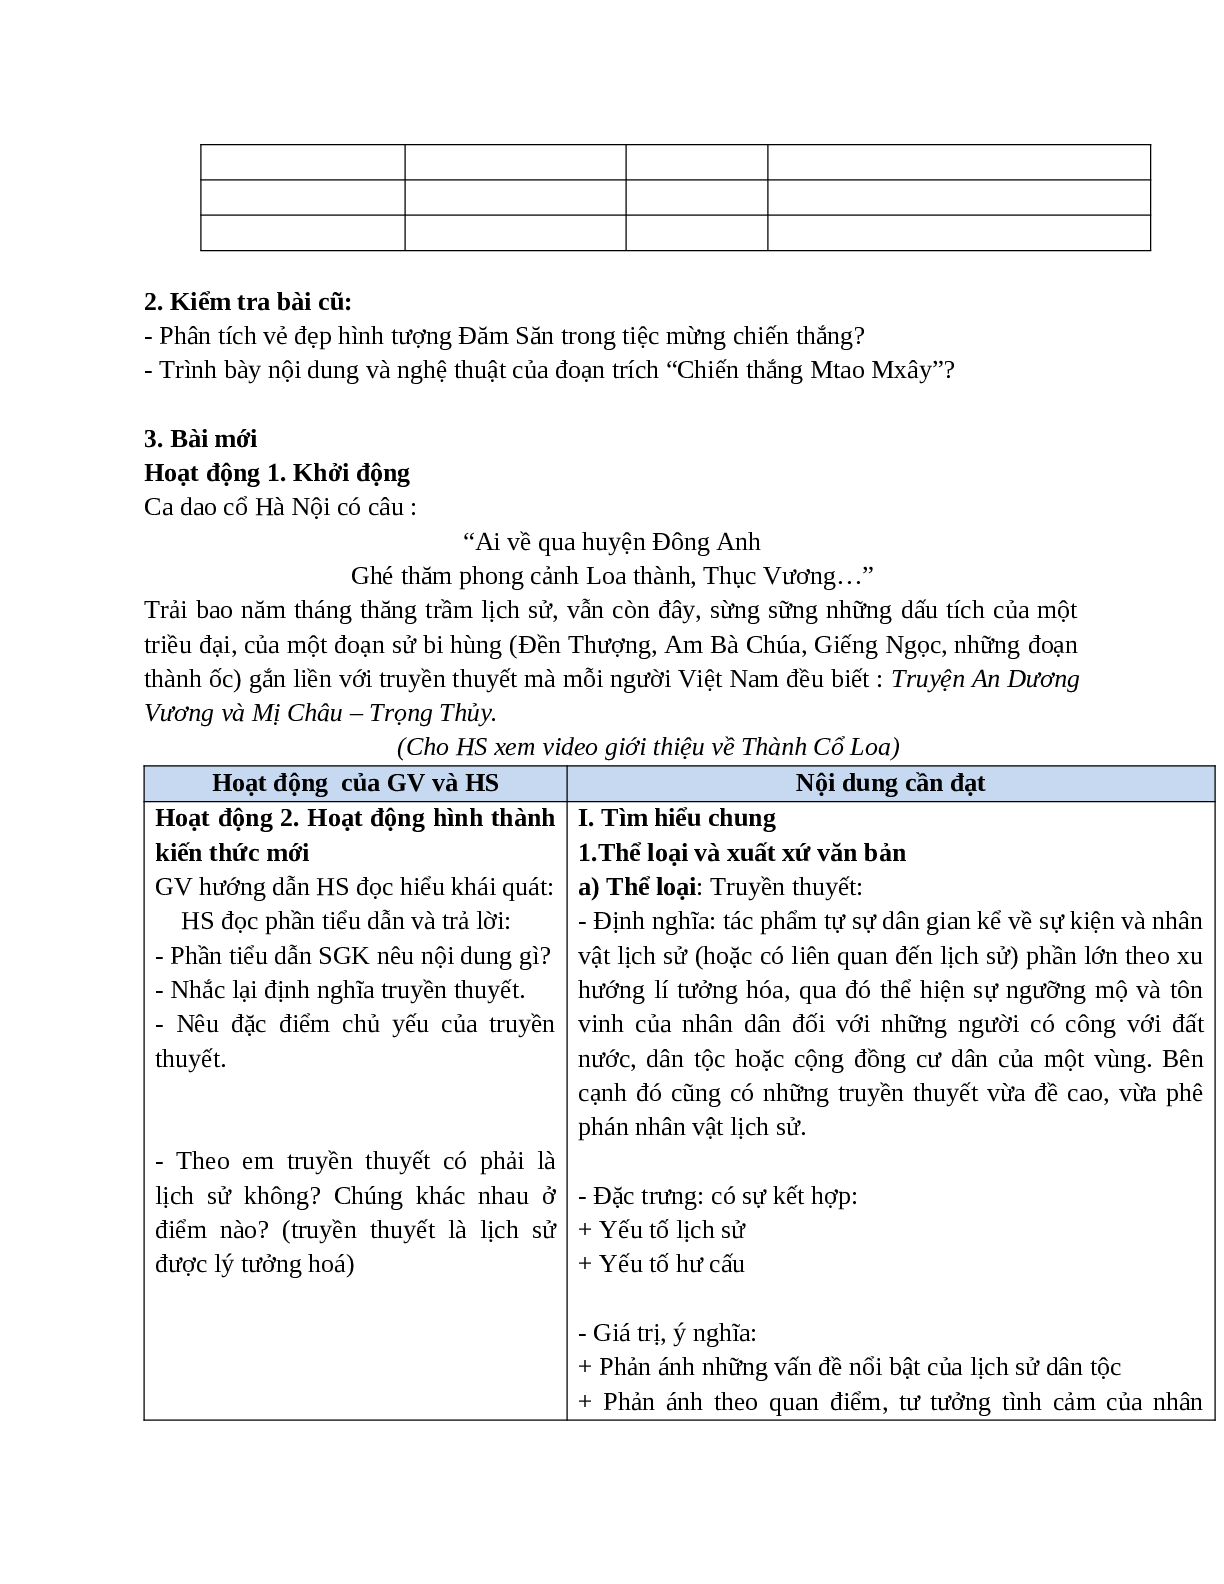 Giáo án Ngữ văn 10, tập 1, bài Truyện An Dương Vương và Mị Châu - Trọng Thủy (tiết 1) mới nhất (trang 2)